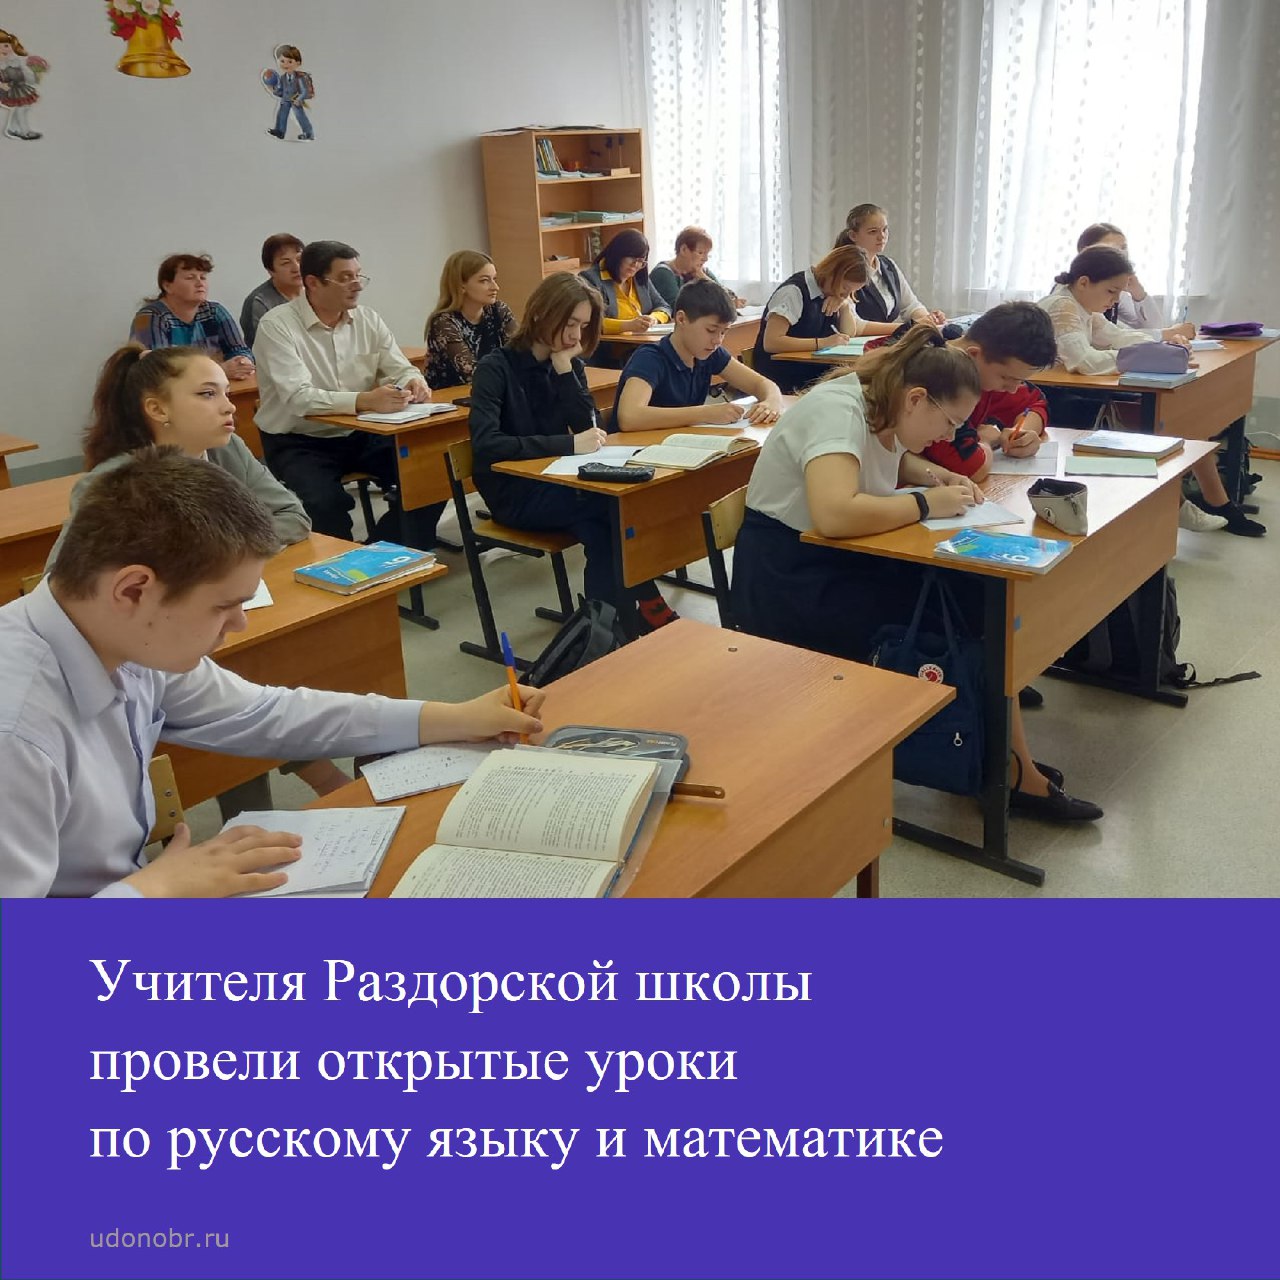 Учителя Раздорской школы провели открытые уроки по русскому языку и математике